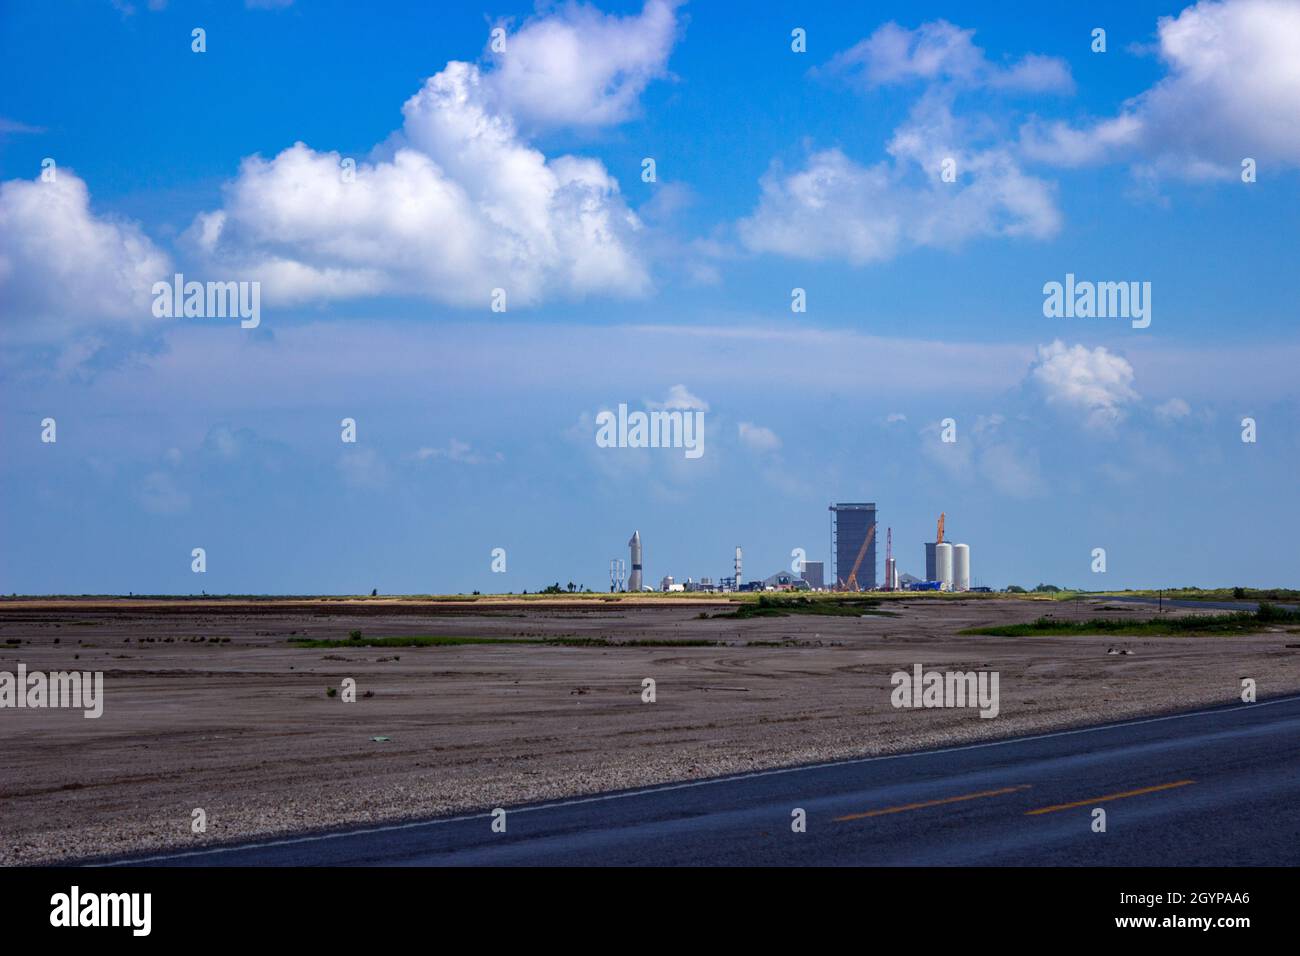 SpaceX Starbase s'étend en dessous des nuages blancs, bouffieux et en sous-sol.La baie haute et la zone de pré-construction peuvent être vues sur le site près de Brownsville, Texas. Banque D'Images